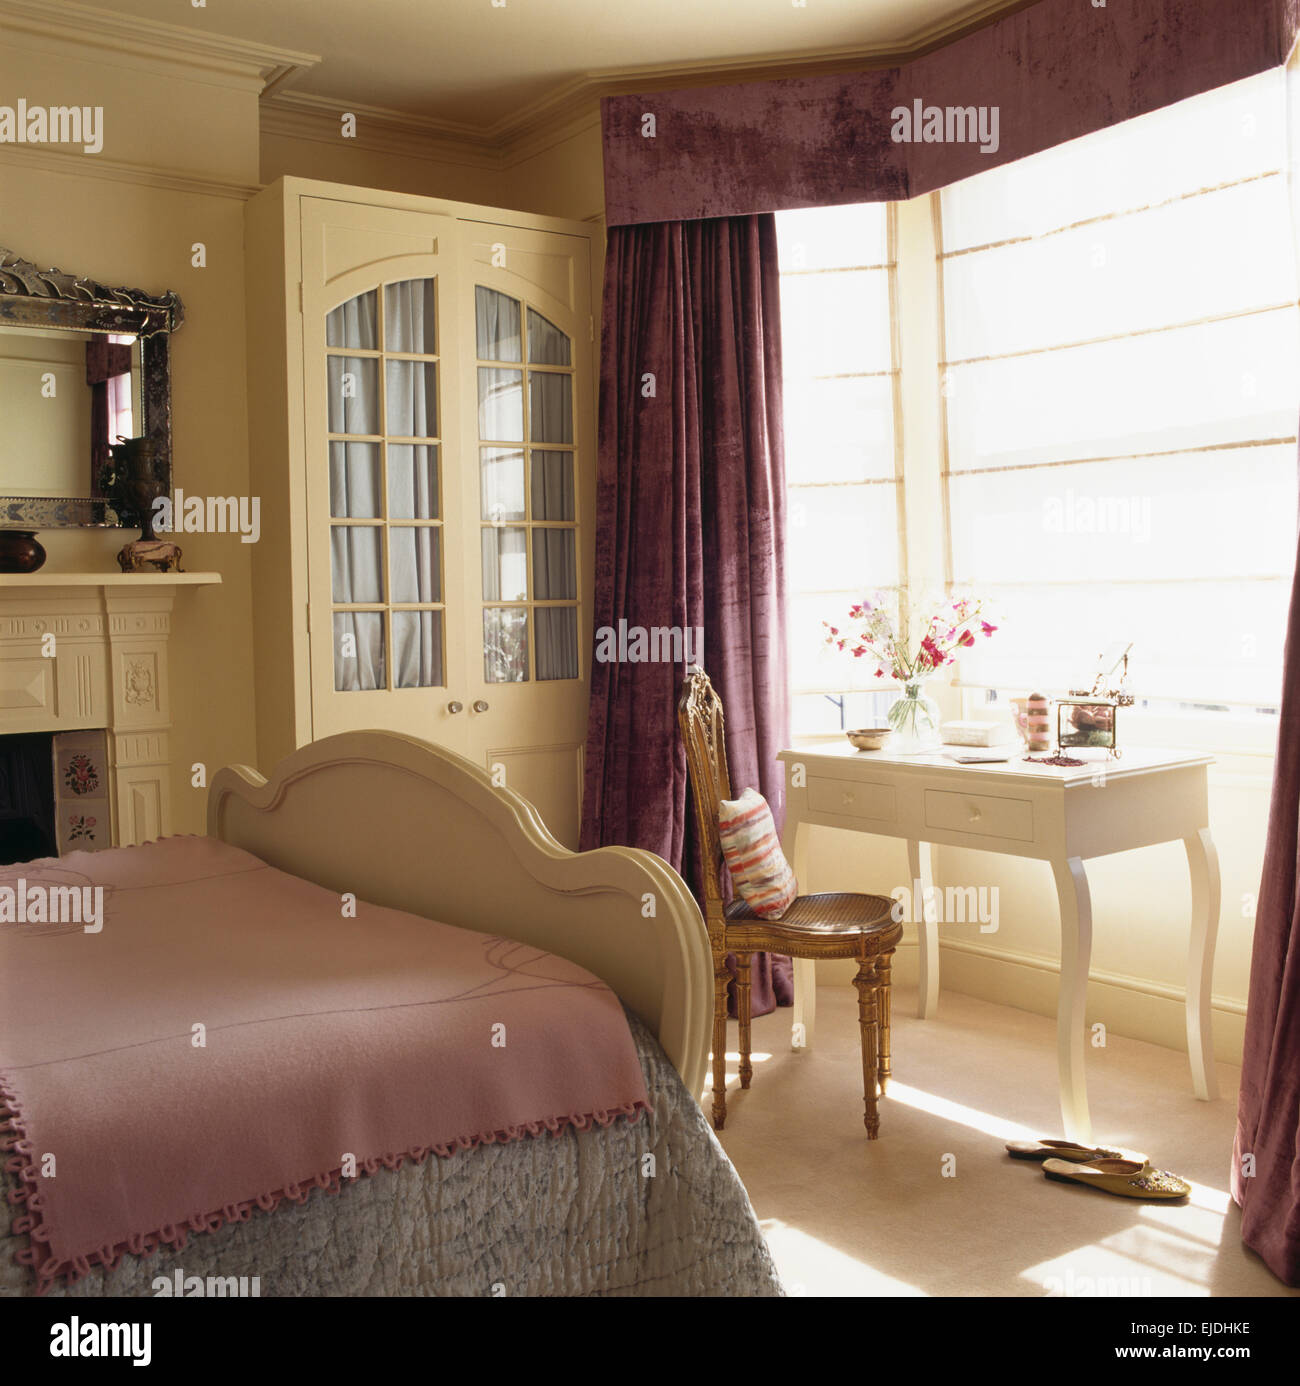 Équipé de crème armoire rideaux dans une chambre traditionnelle avec des rideaux de pourpre et de fin lin, abat-jour sur la fenêtre Banque D'Images